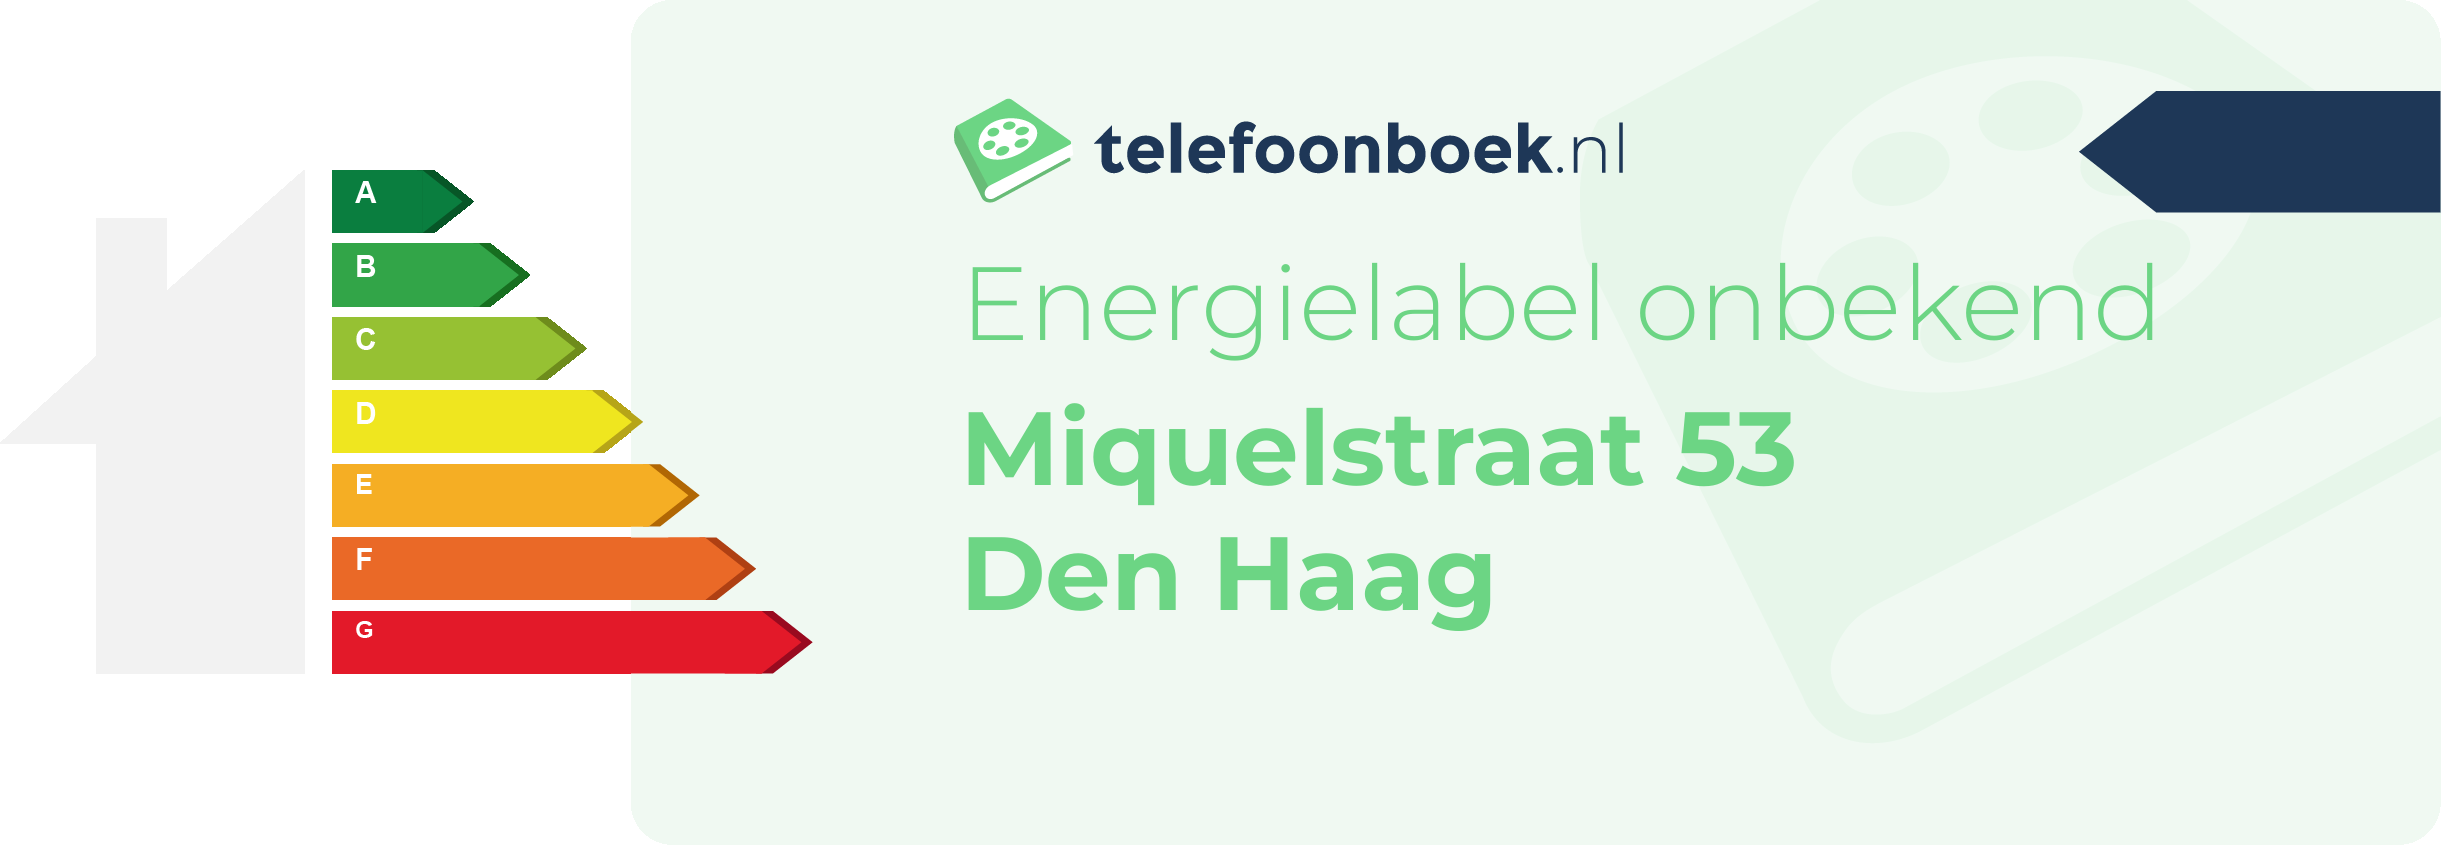 Energielabel Miquelstraat 53 Den Haag